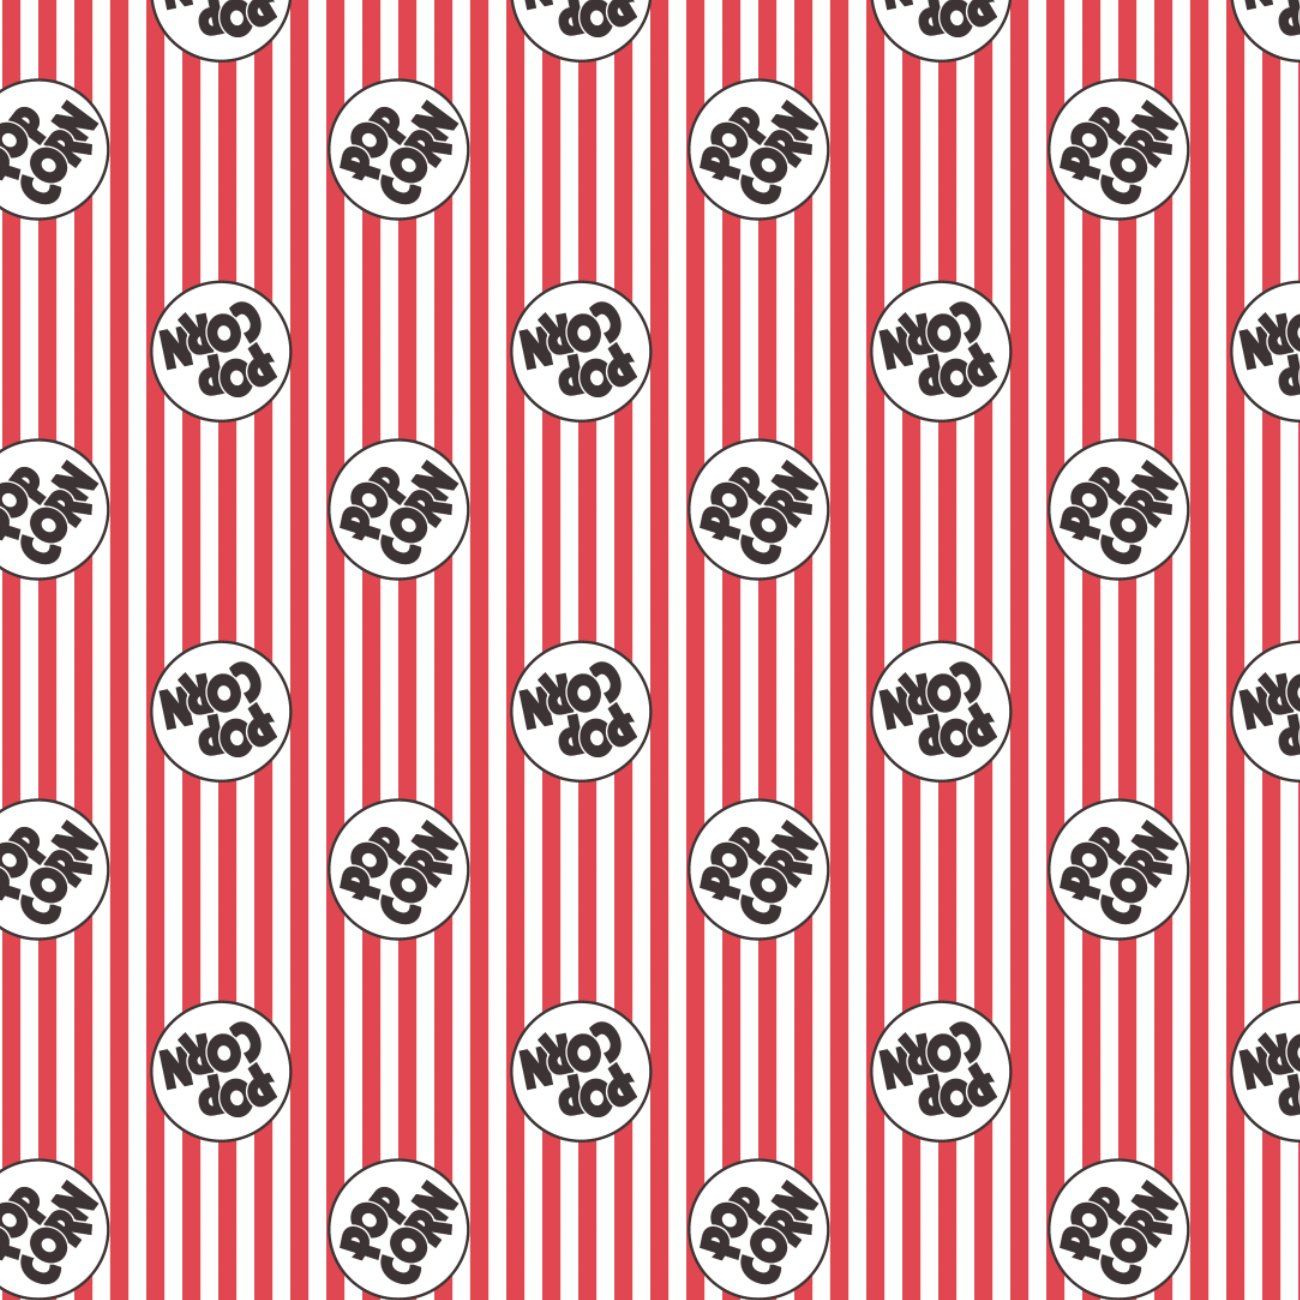 Pop by CDS - 2 Yard Cotton Cut - Logo on Stripes - Multi